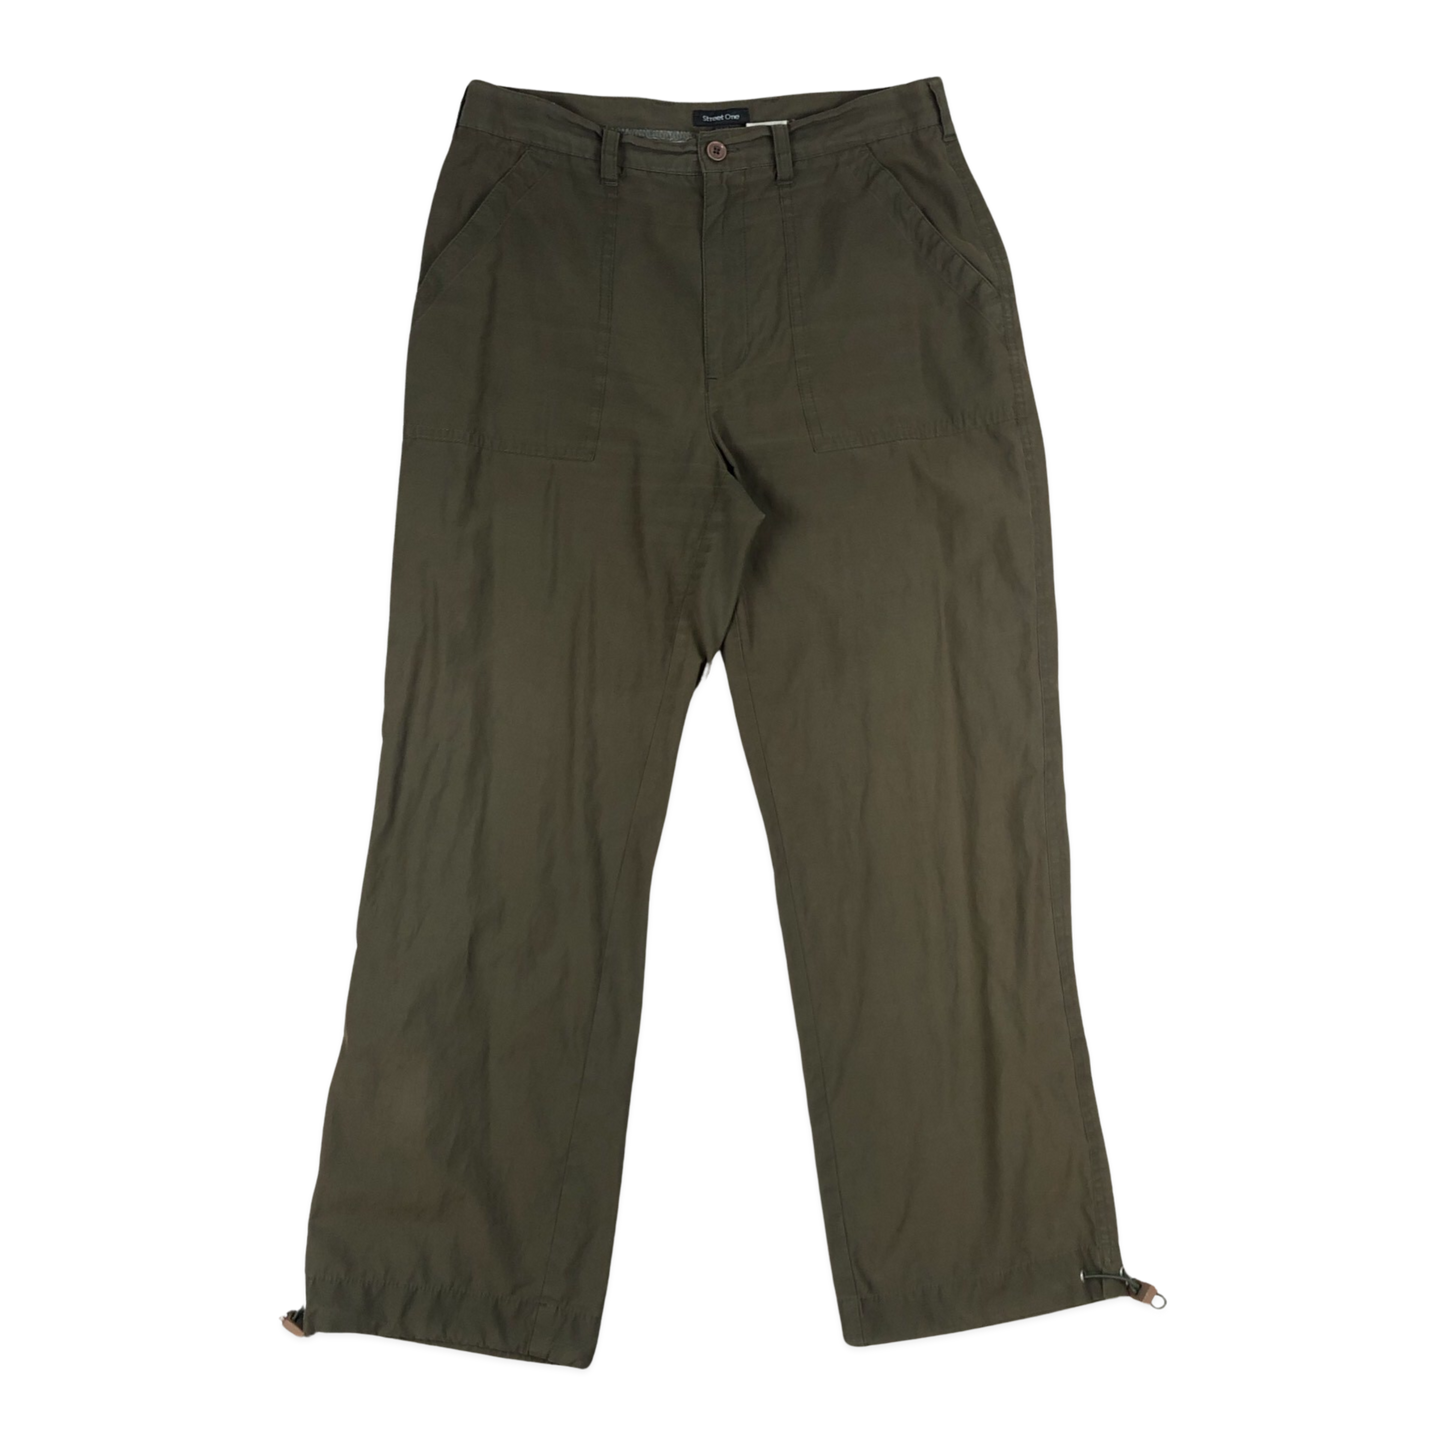 Vintage Green Parachute Pants 12